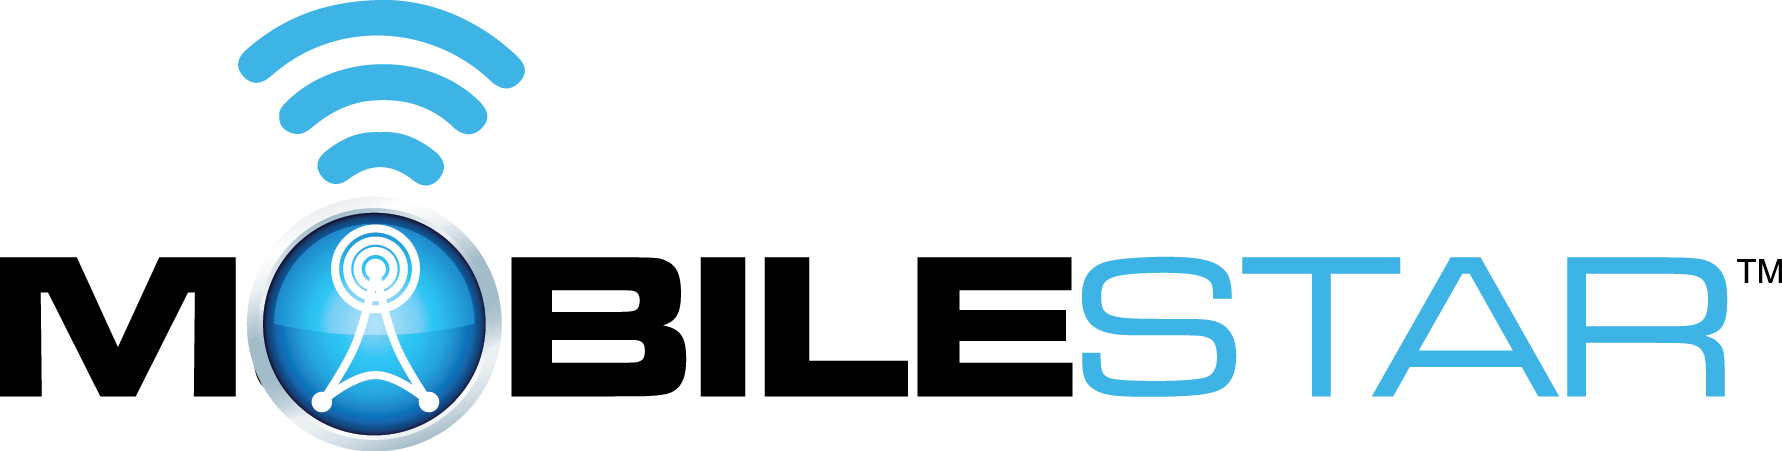 mobilestar-logo